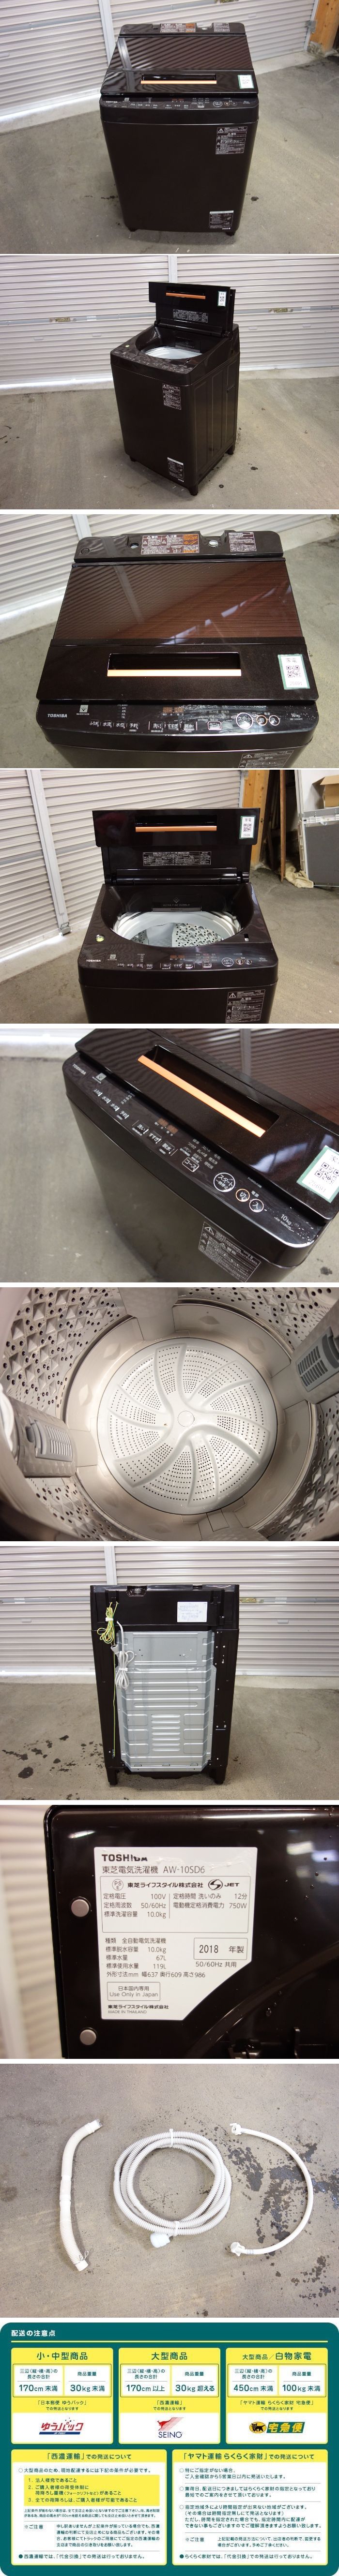 直販正規O▲東芝 洗濯機 2018年 10.0kg ZABOON ウルトラファインバブル洗浄 ガラストップ ステンレス槽 AW-10SD6 (25691) 5kg以上